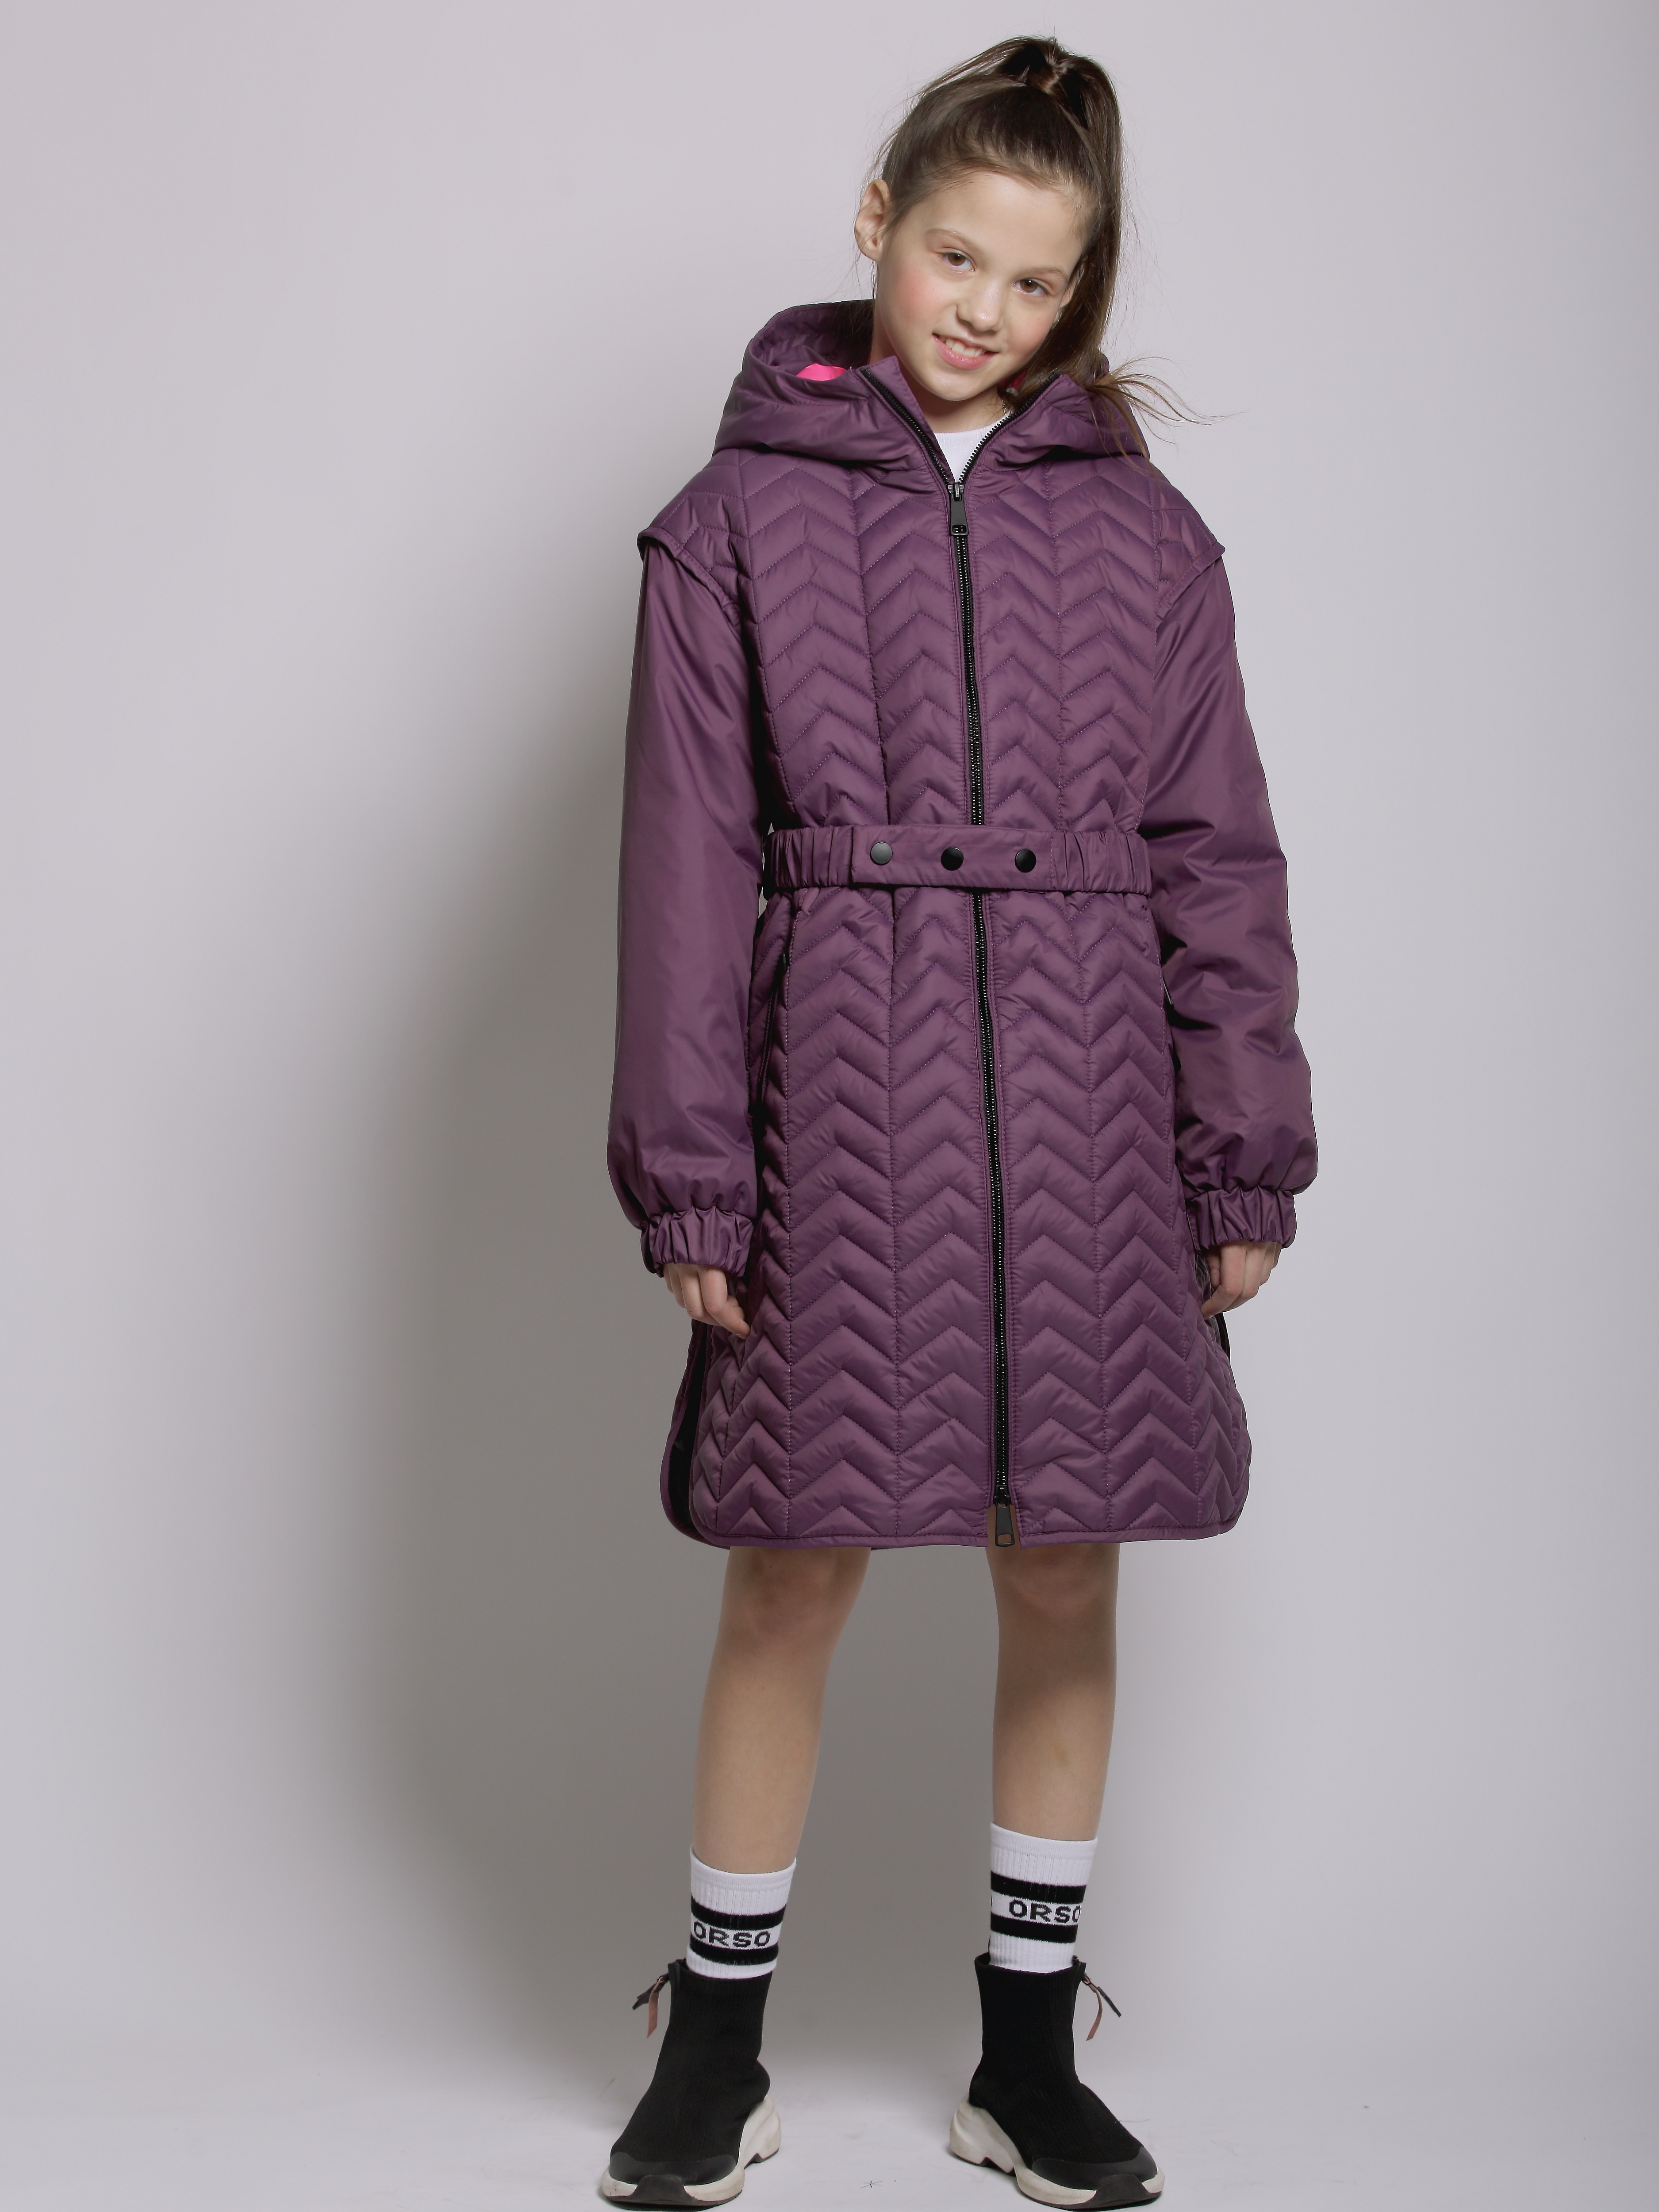 Пальто детское Orso Bianco Мелисса, темно-фиолетовый, ярко-розовый, 134